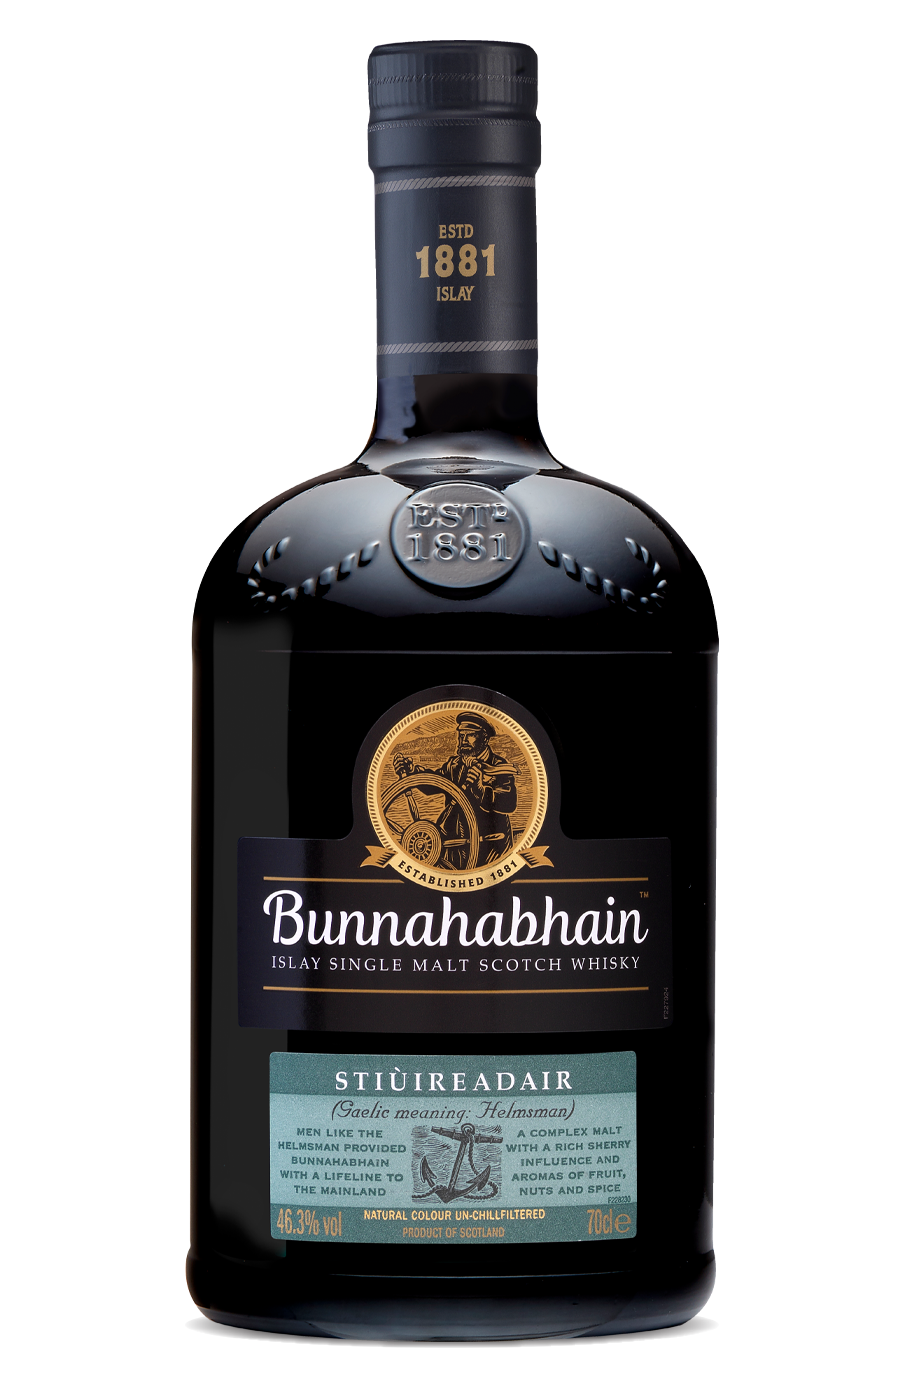 Bunnahabhain Stiuireadair Single Malt Scotch Whisky 46.3% 700ml